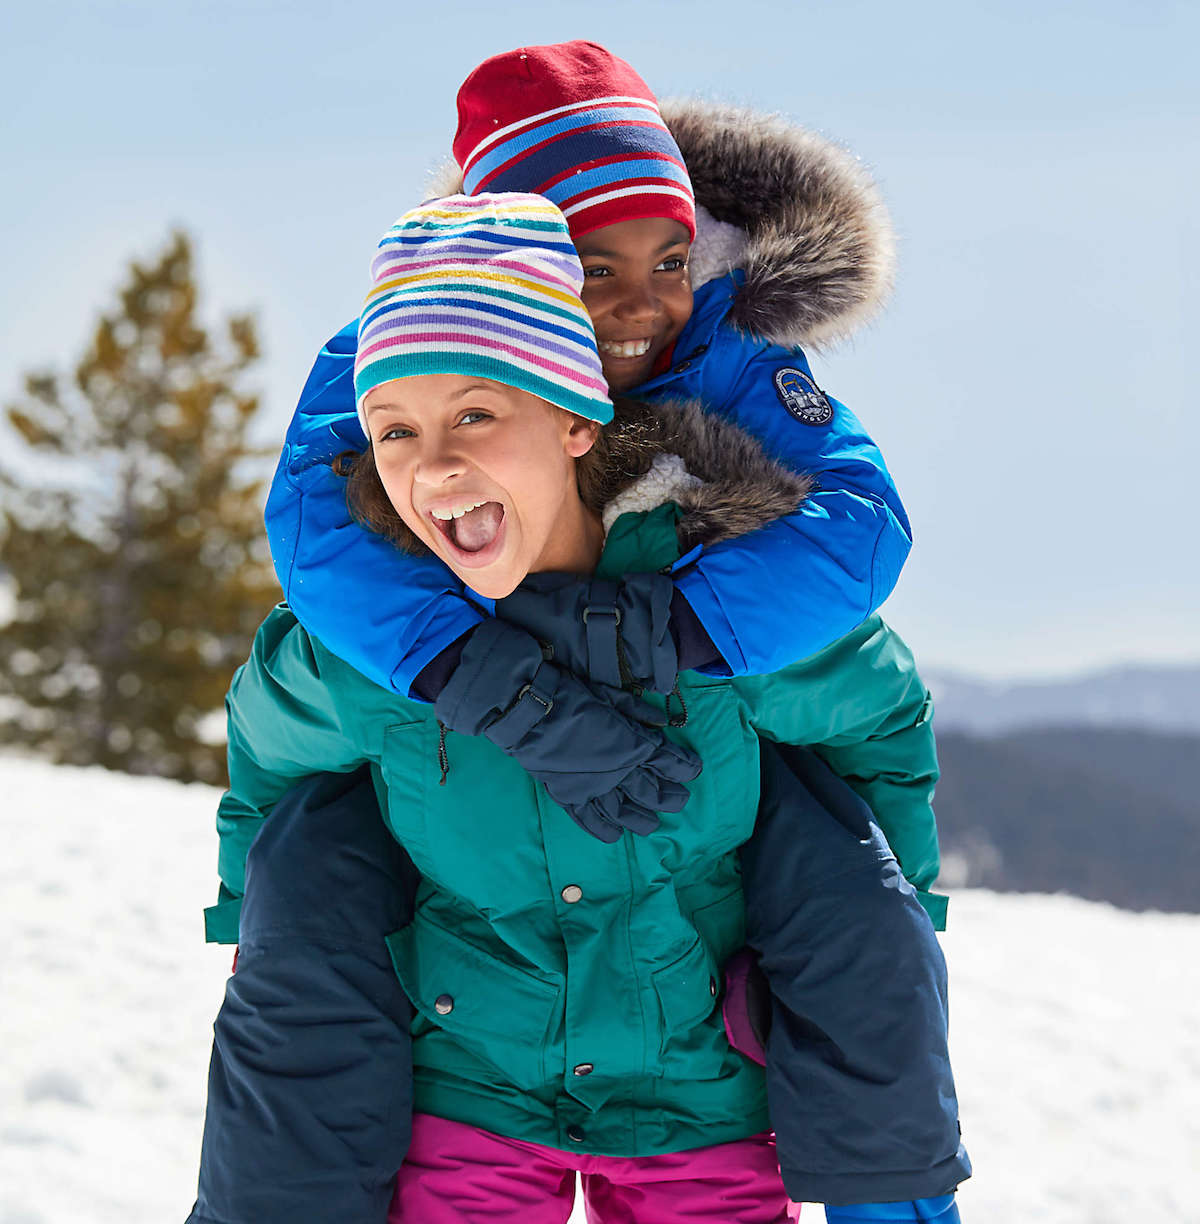 Best Kids Winter Coats to Buy in 2020 